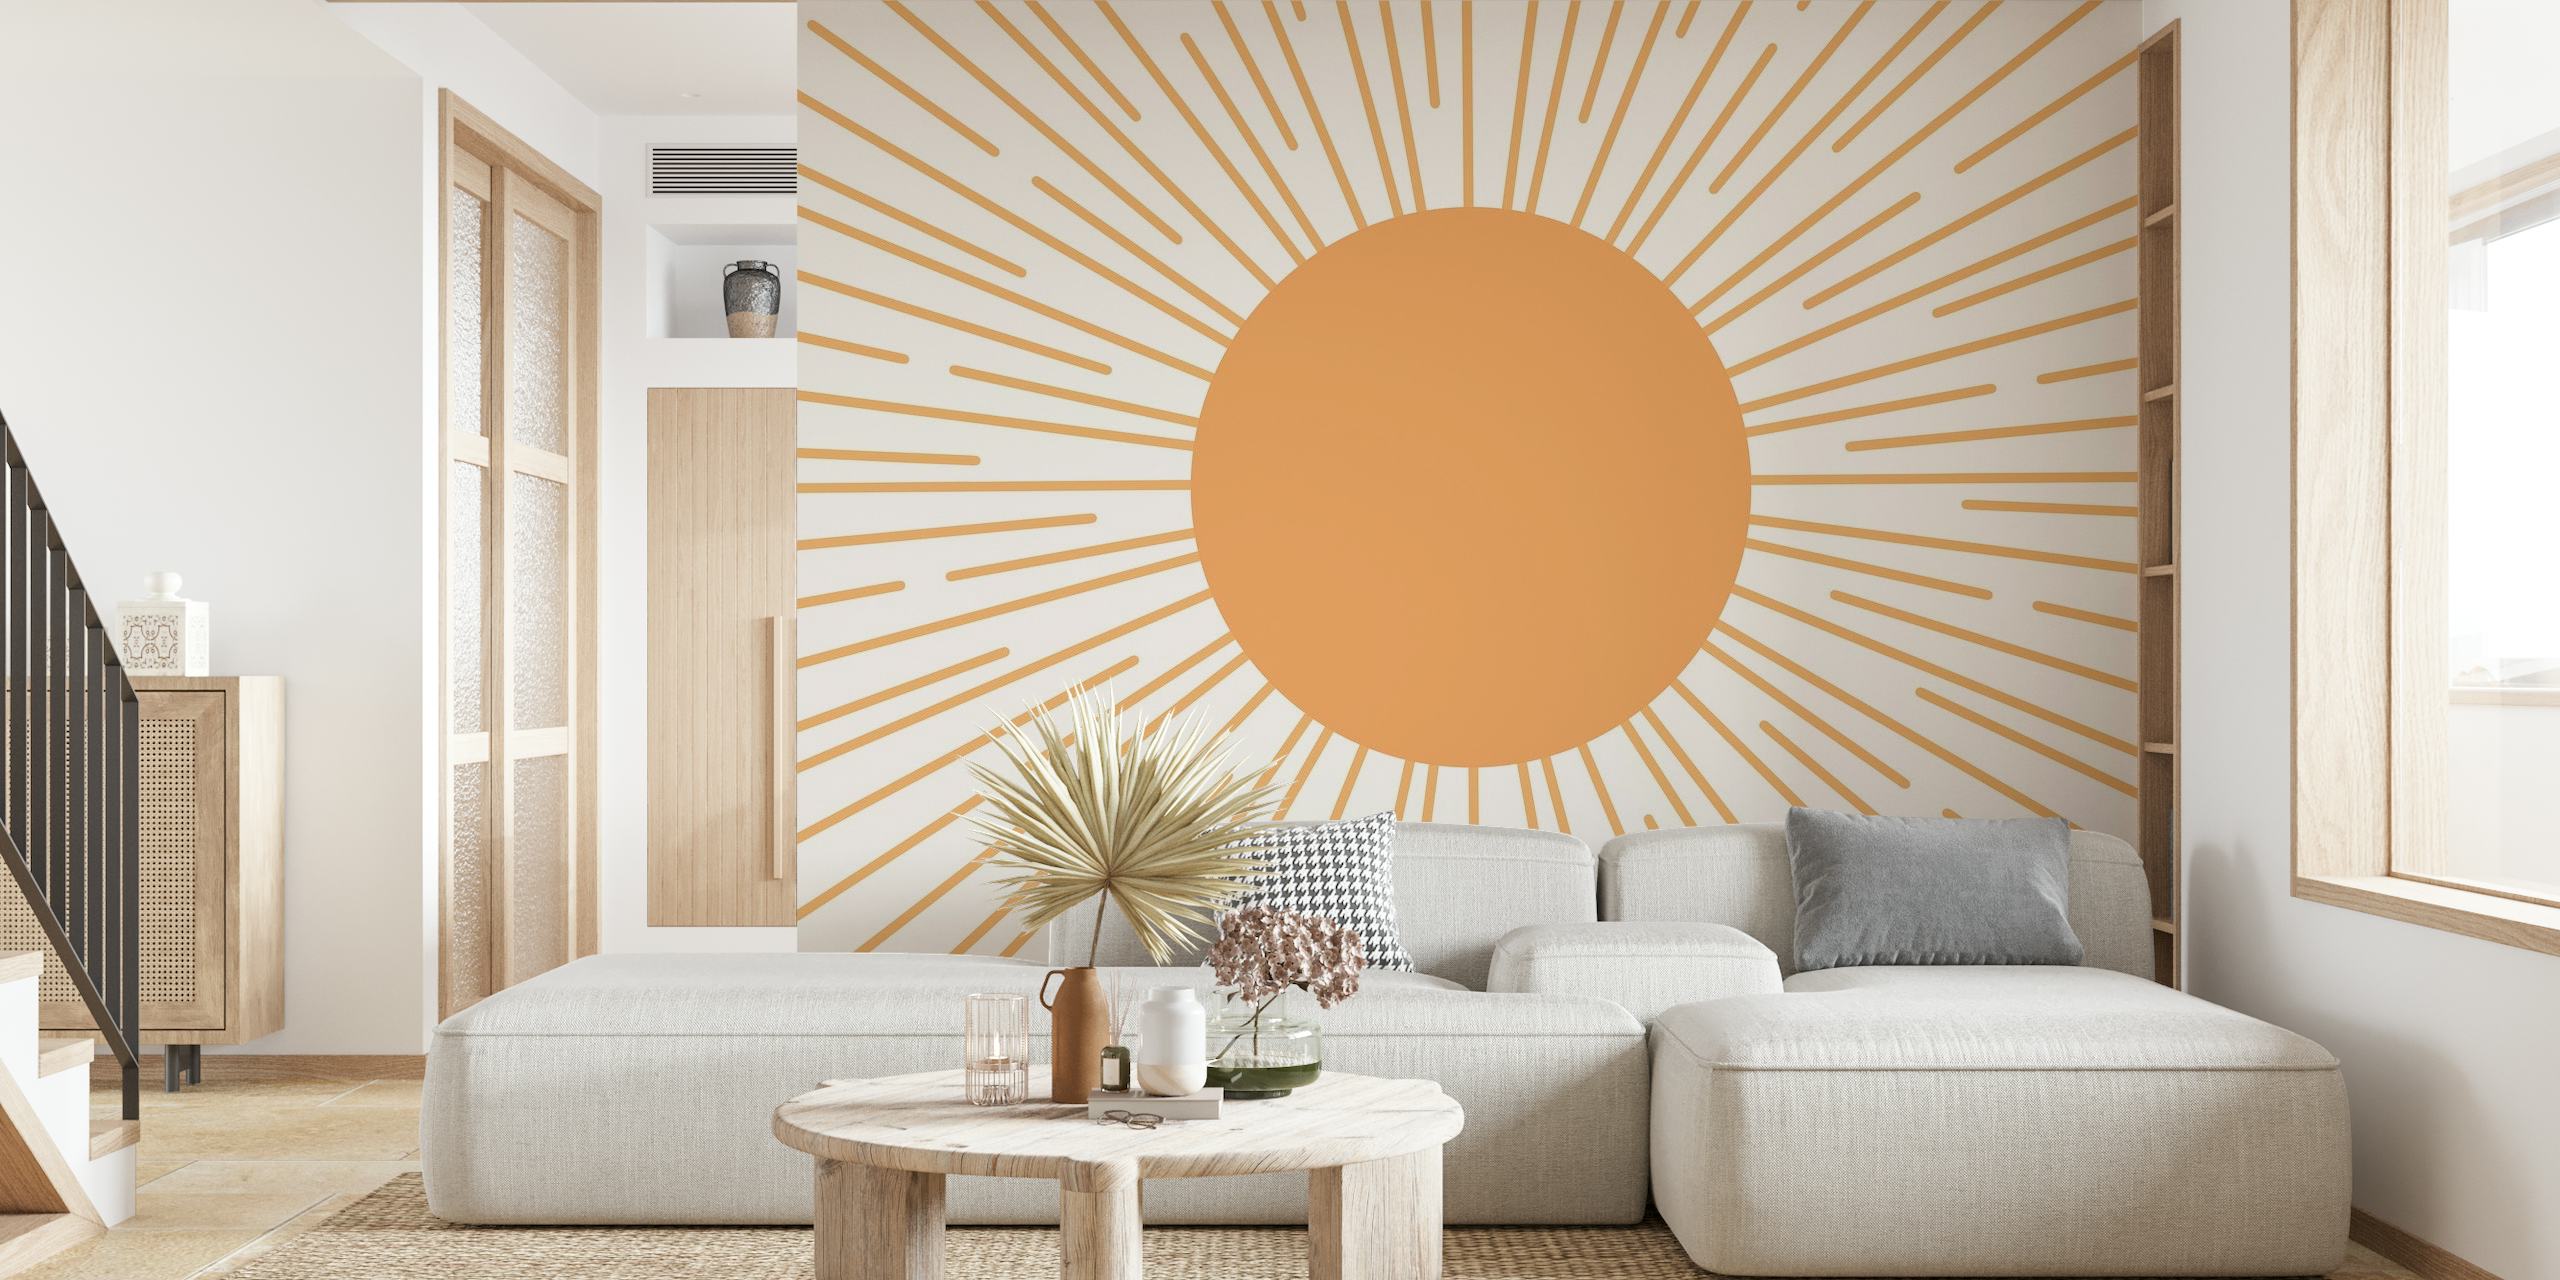 Fototapete mit Sunburst-Muster, warmem Beige in der Mitte und strahlenden cremefarbenen Linien auf hellem Hintergrund